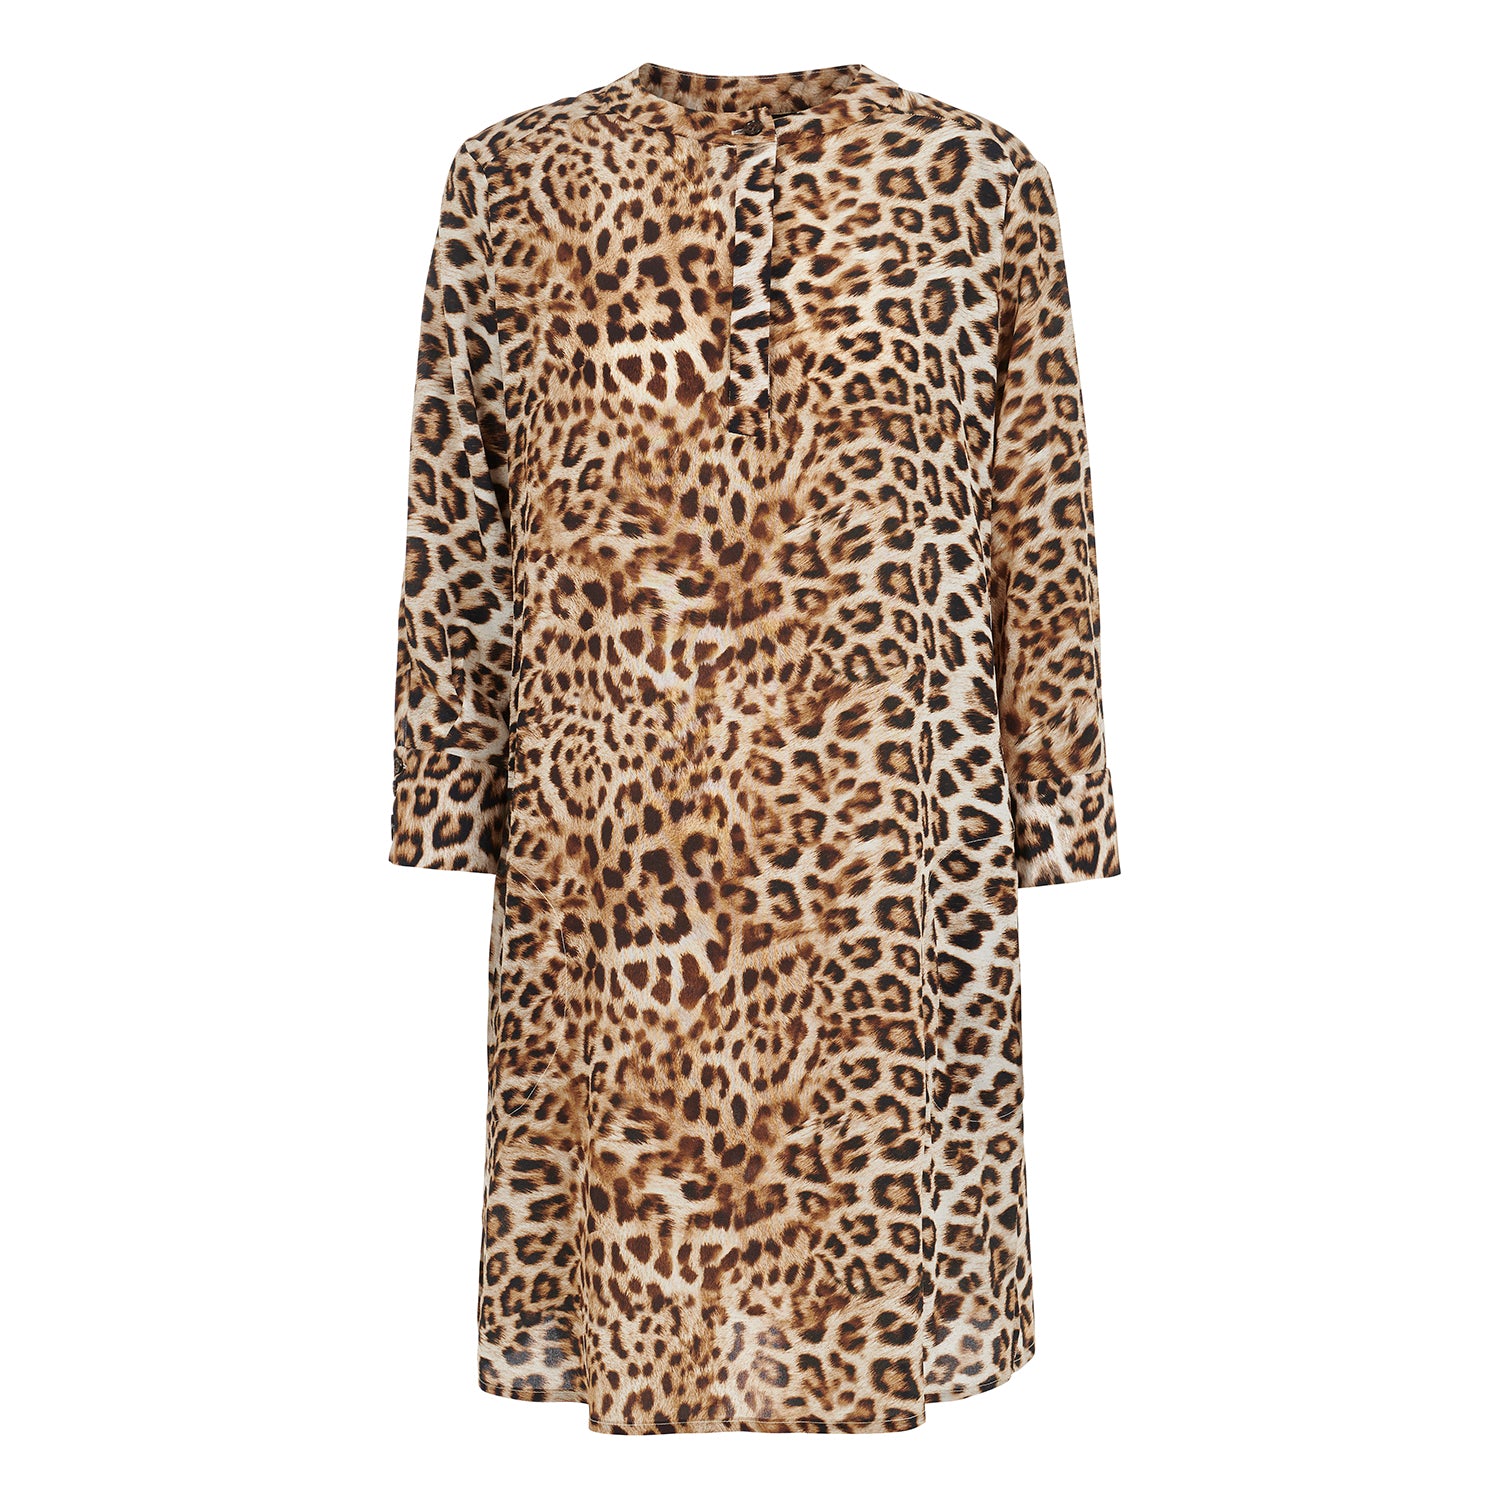 Silk Shirt Dress in Leopard.